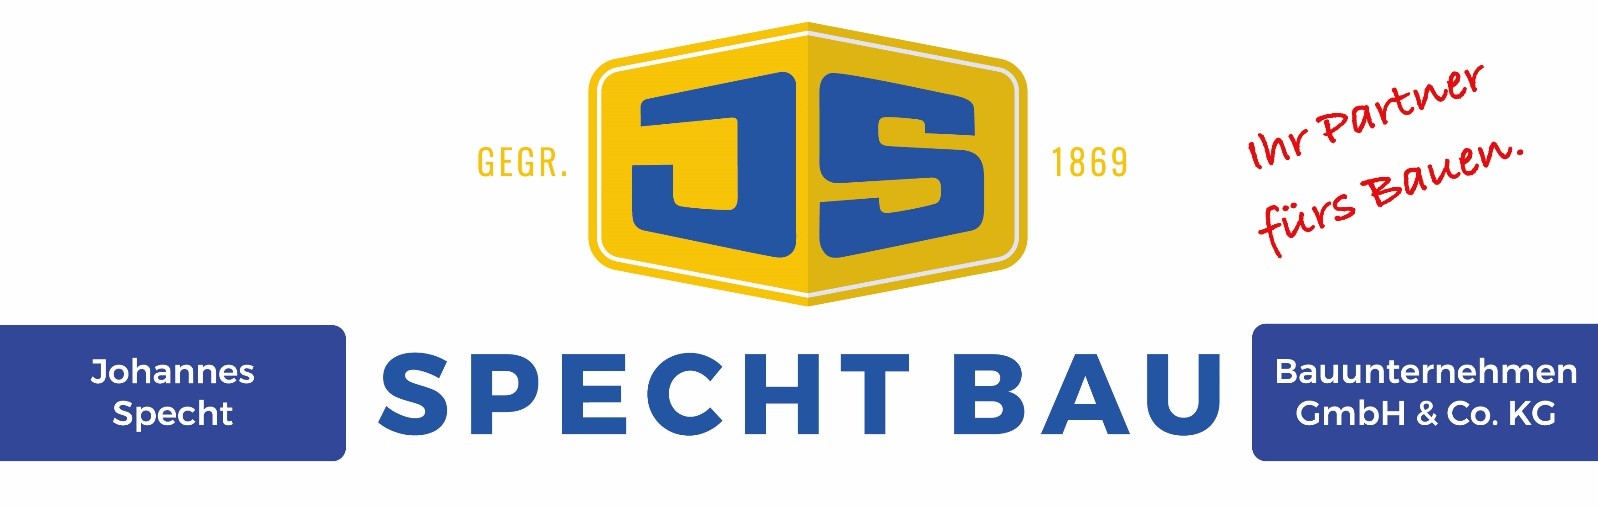 Johannes Specht Bauunternehmen GmbH & Co. KG